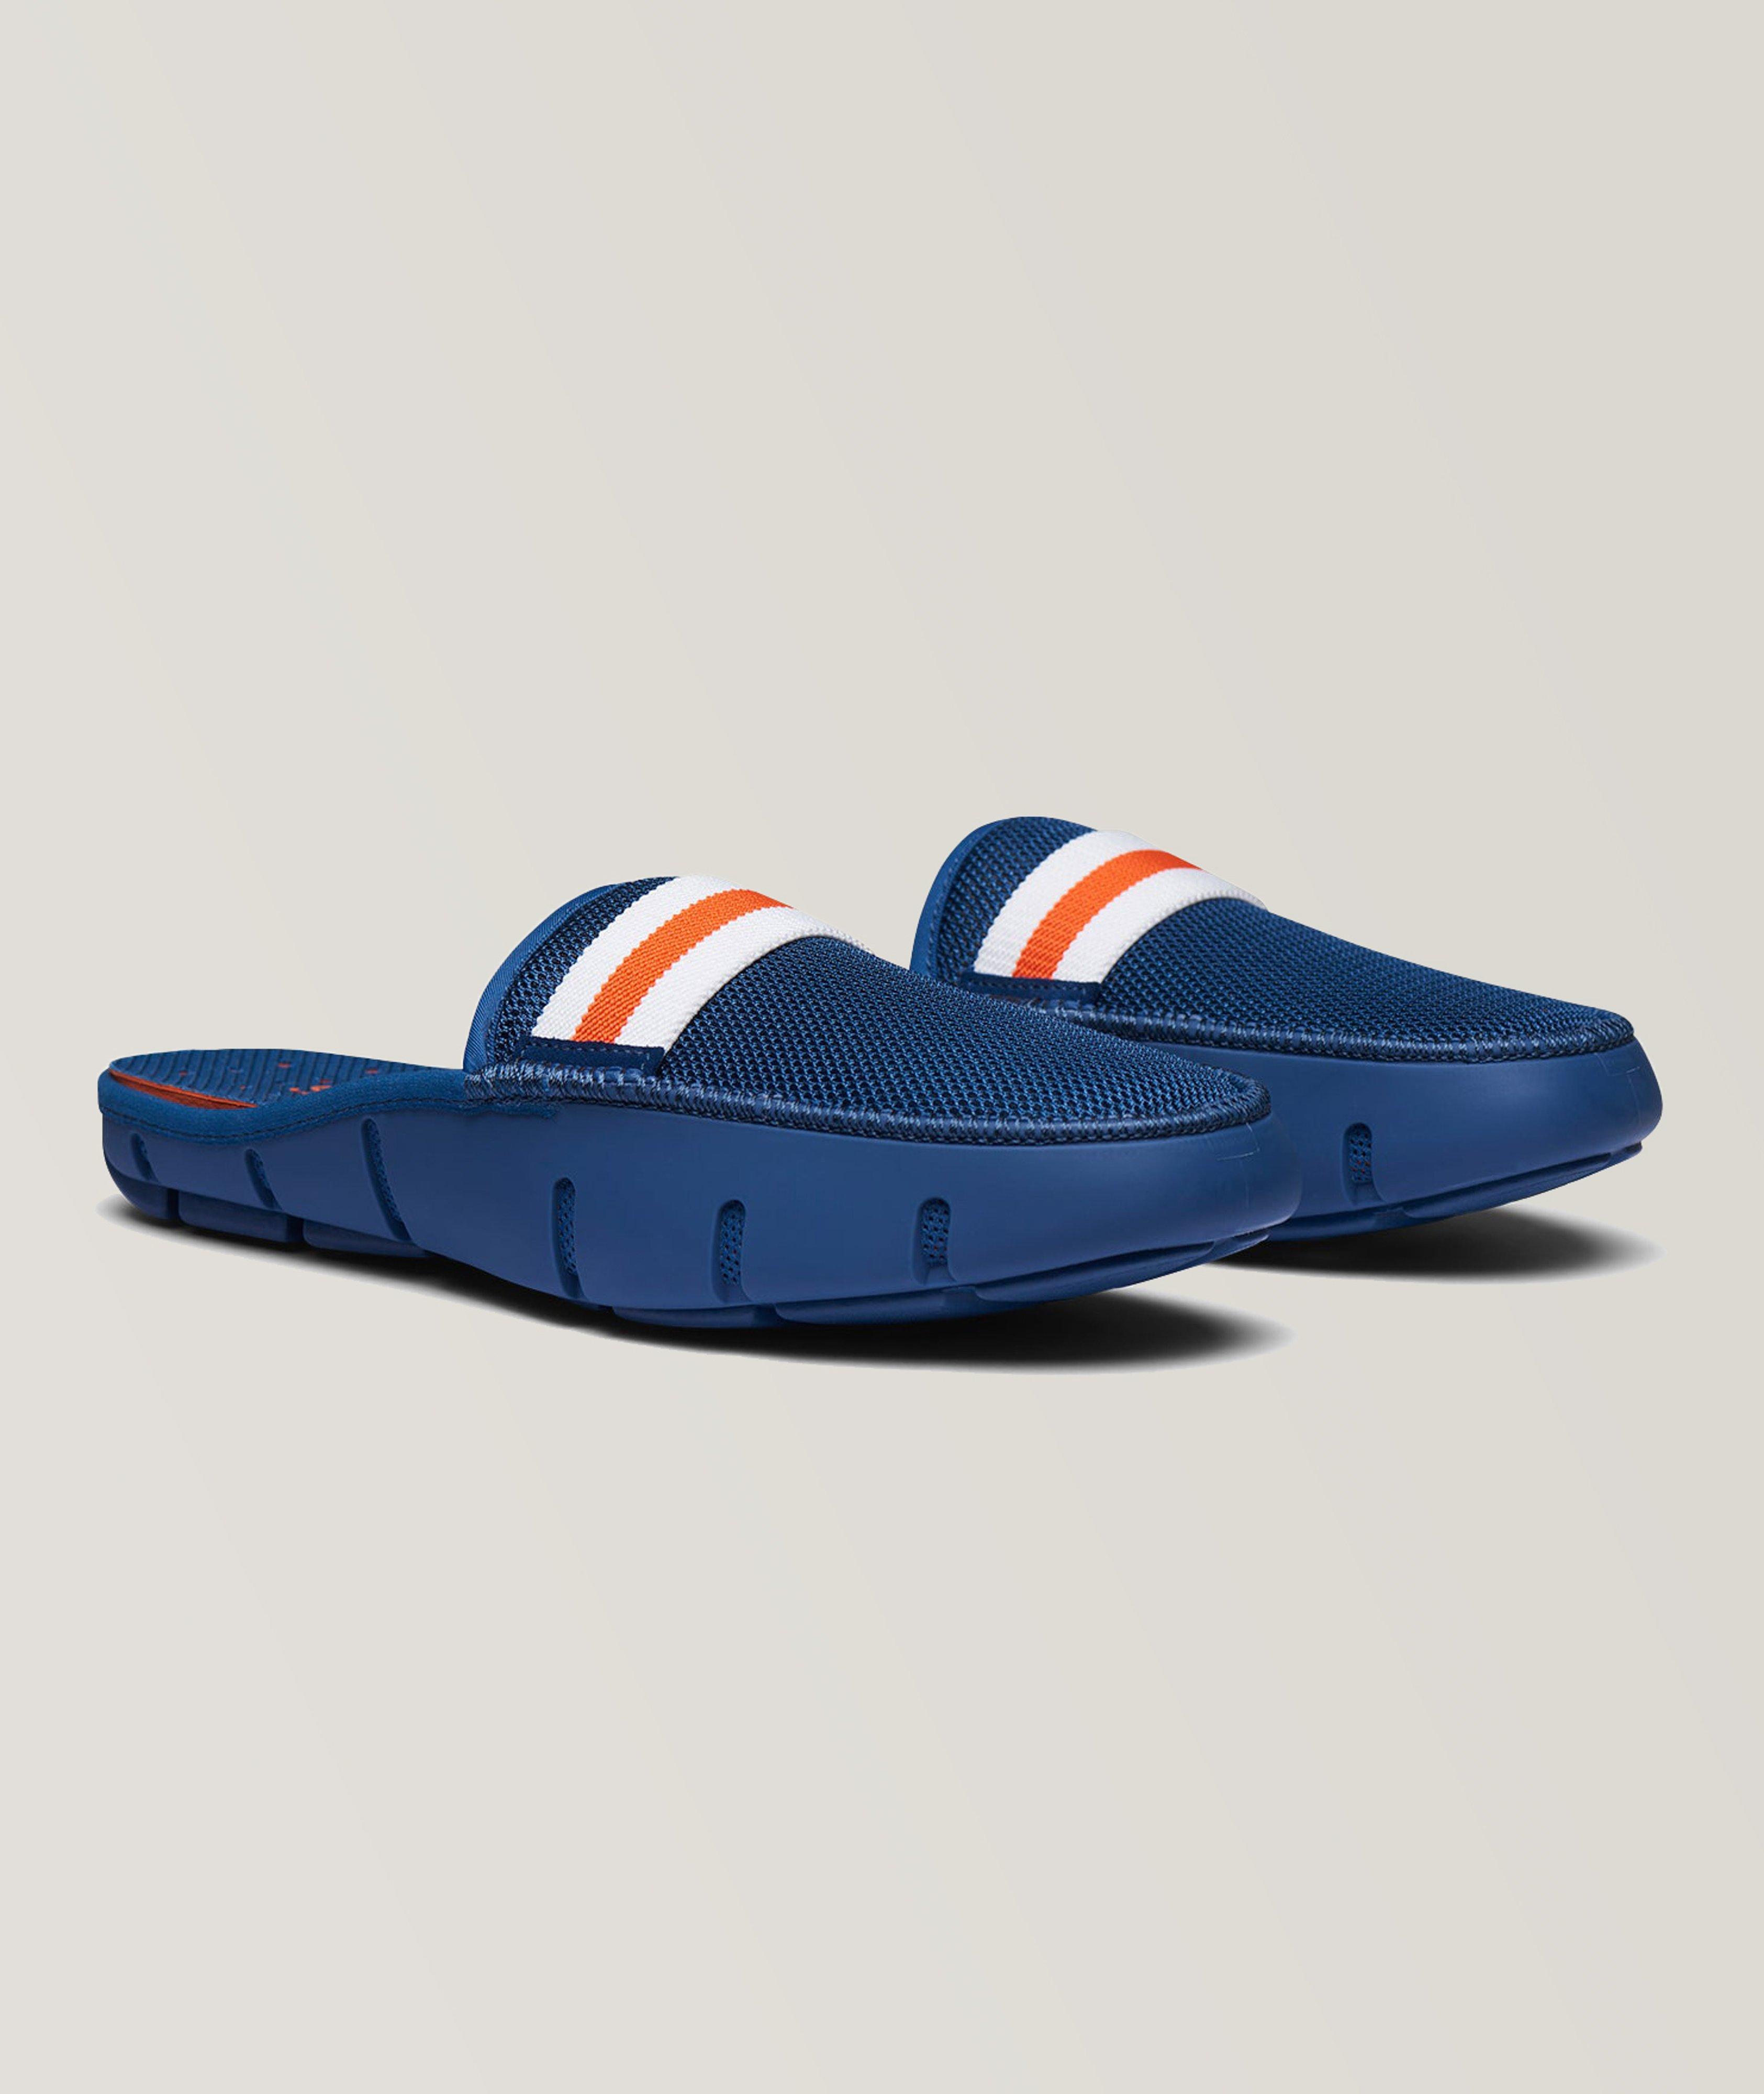 Slide Loafers image 0